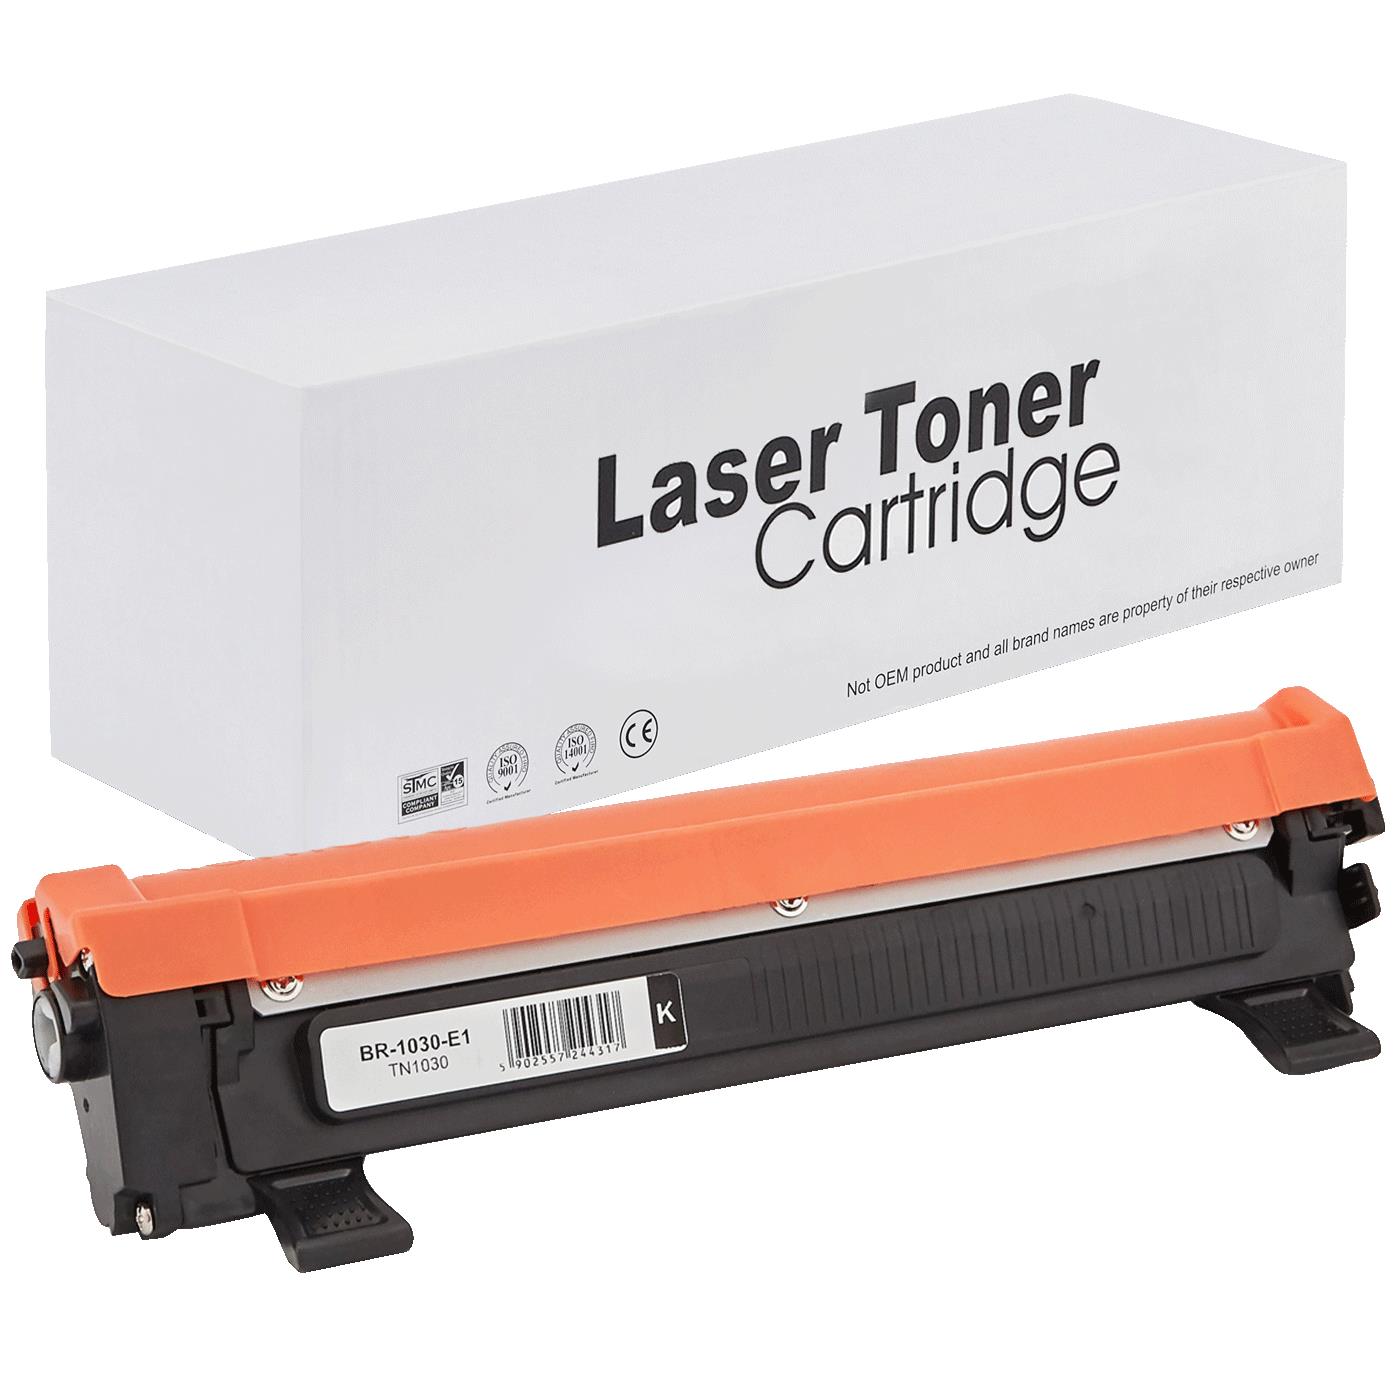 съвместима тонер касета за принтери и печатащи устройства на Brother 1112 Toner BR-1030 | TN1030 / TN1050 / TN-1030. Ниски цени, прецизно изпълнение, високо качество.